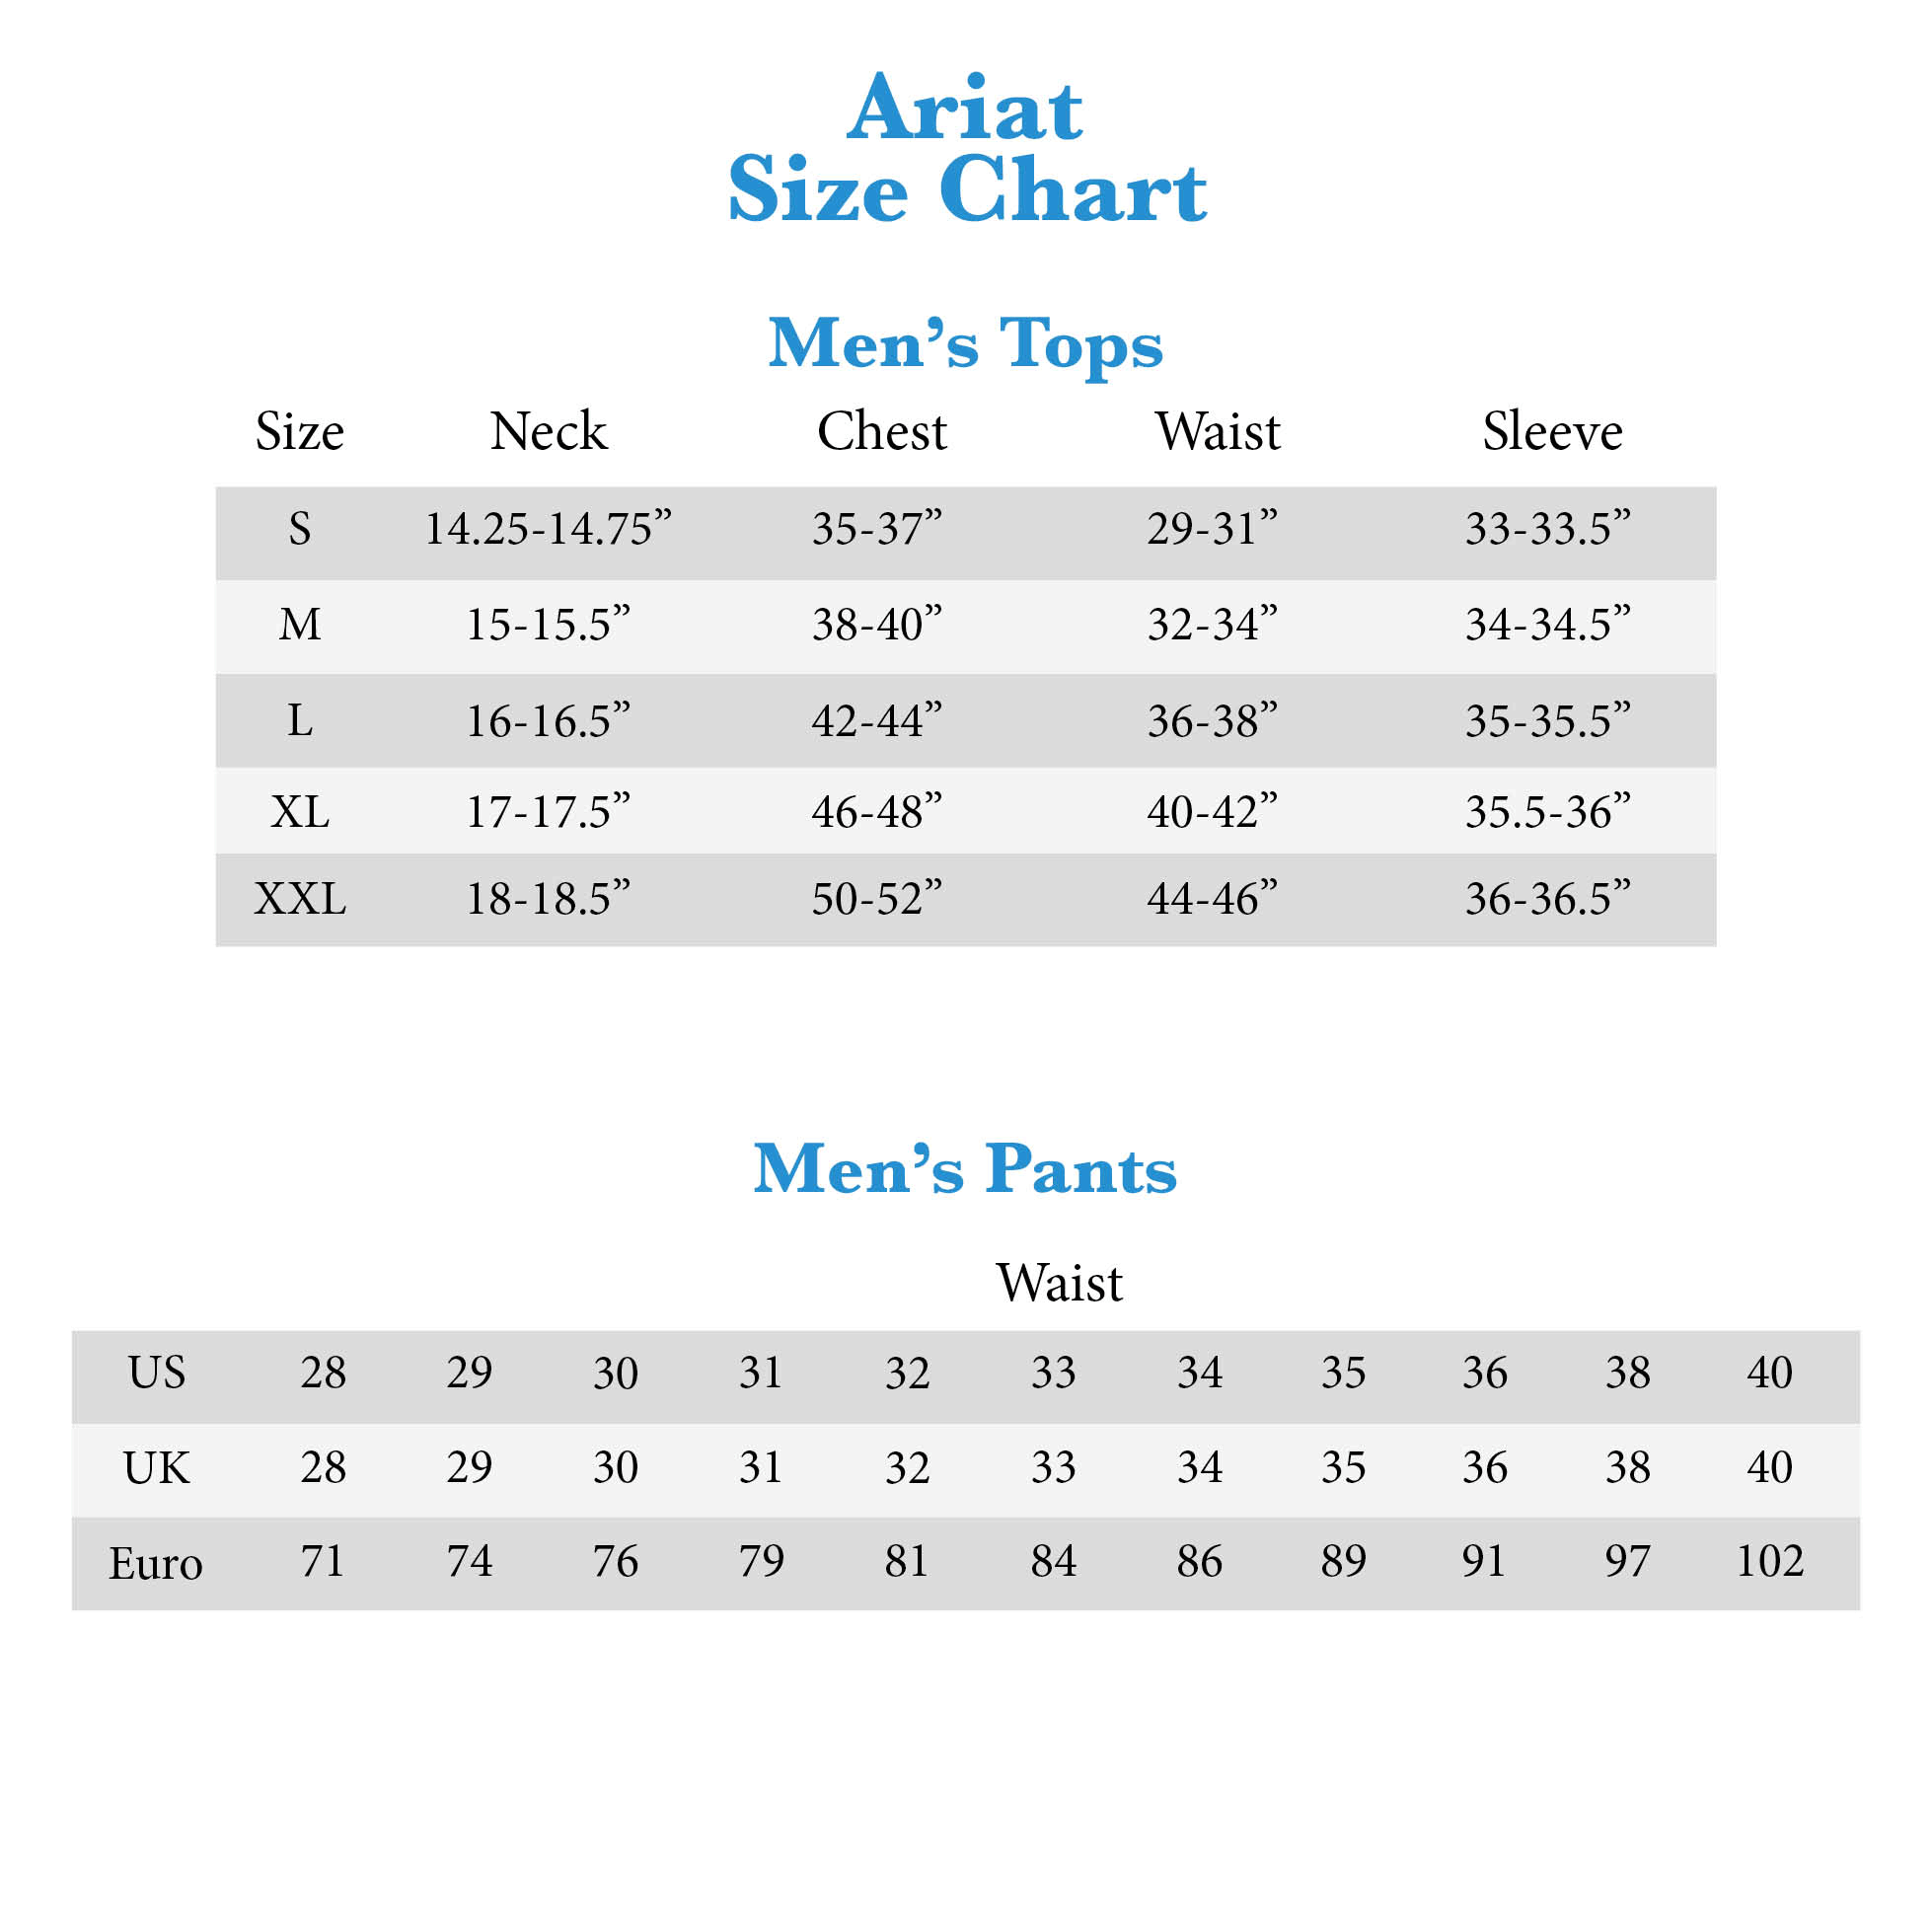 Ariat Shirt Size Chart